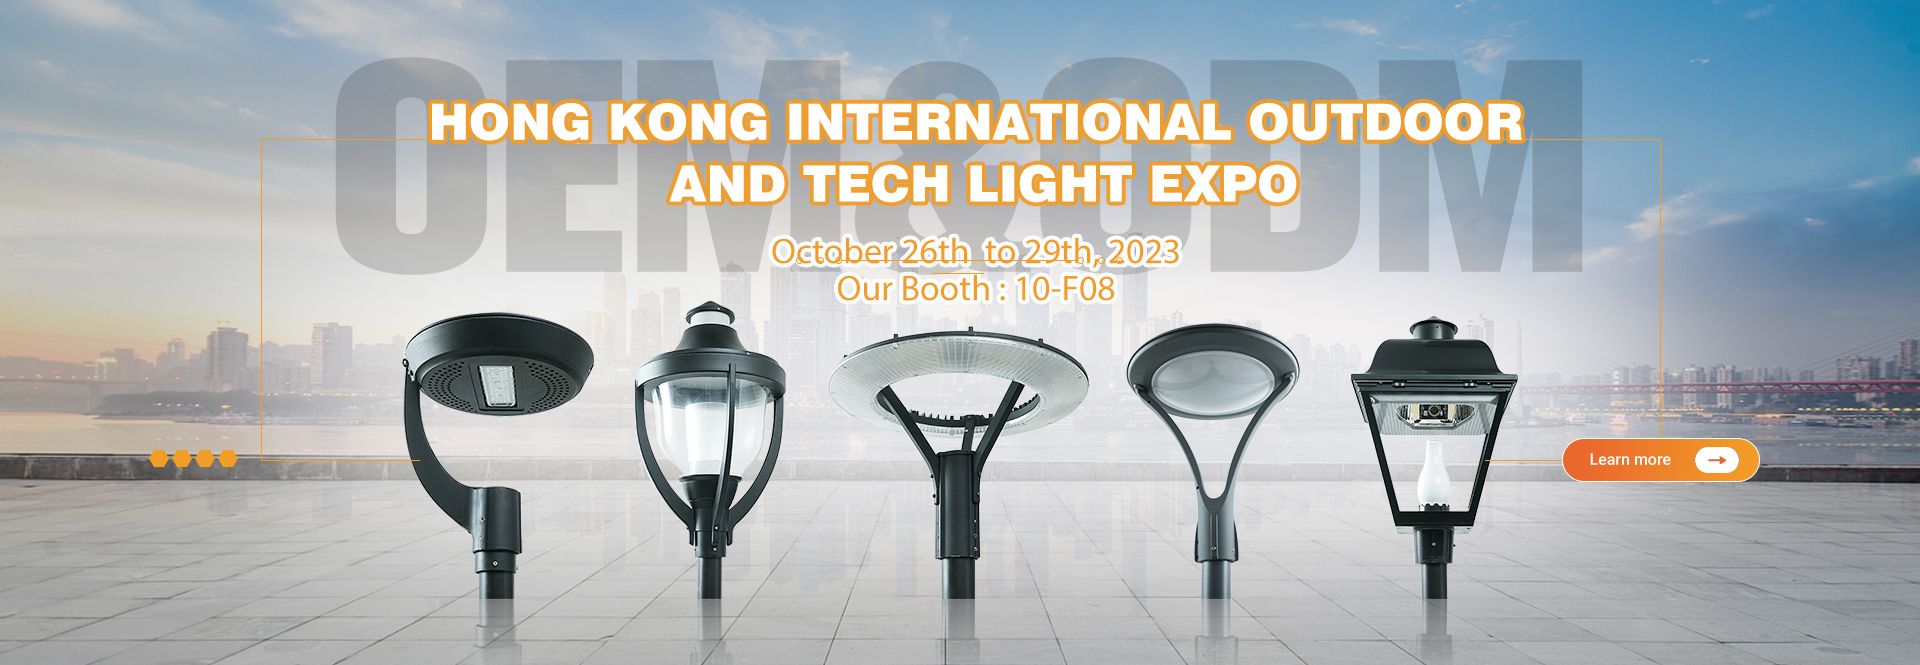 2023 Хонг Конг Олон улсын гадаа болон техникийн гэрлийн үзэсгэлэн